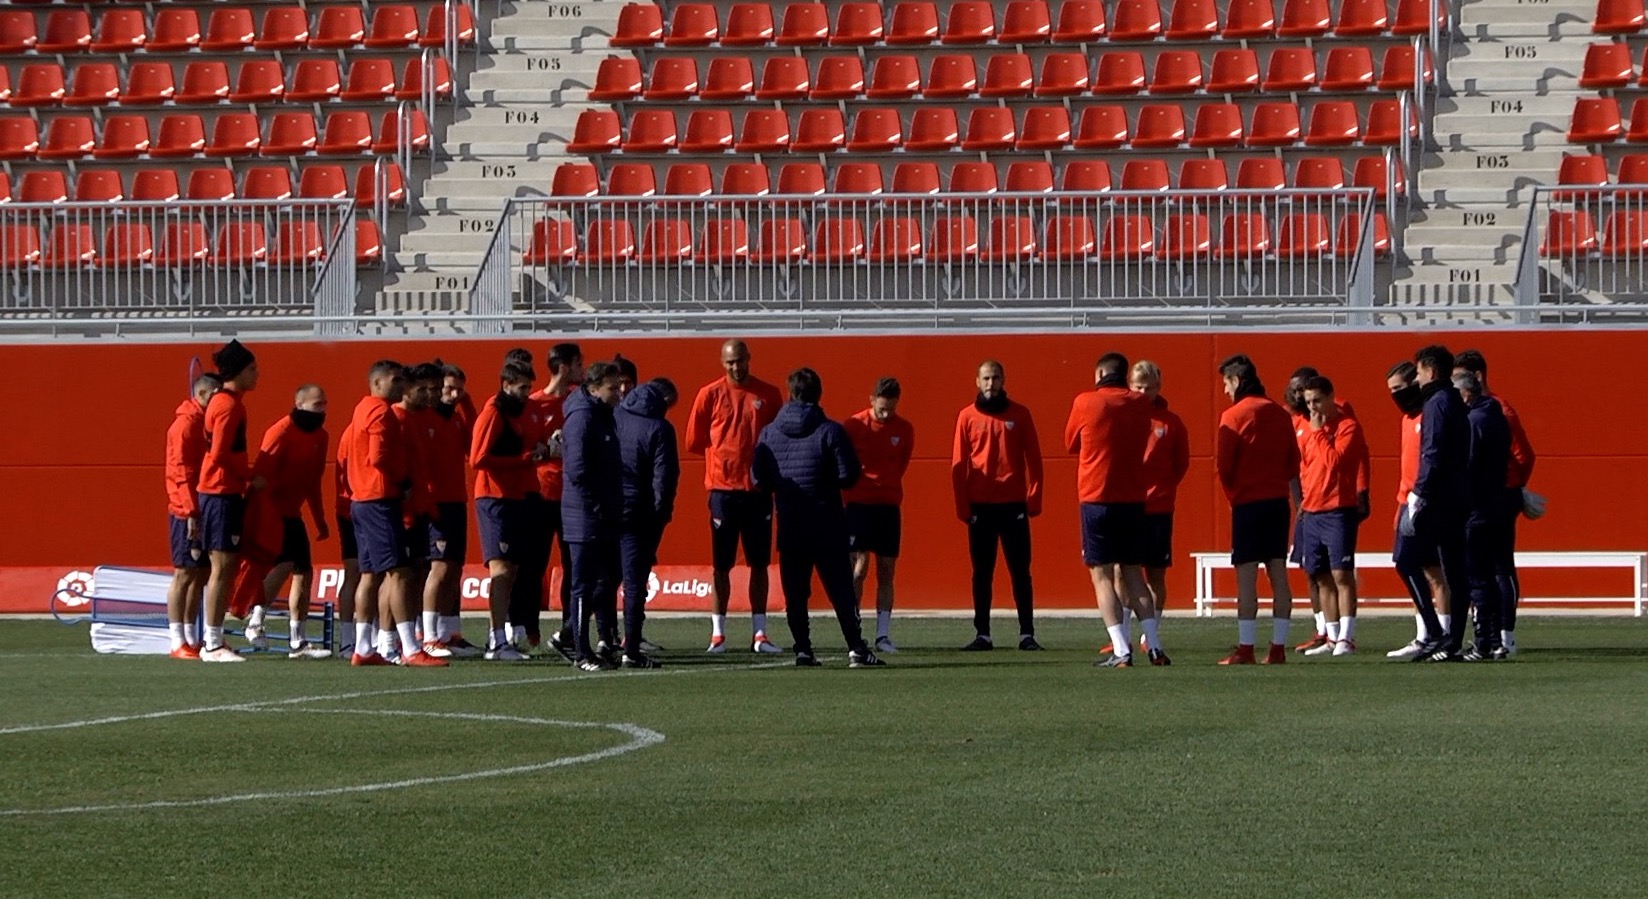 Entrenamiento del Sevilla FC